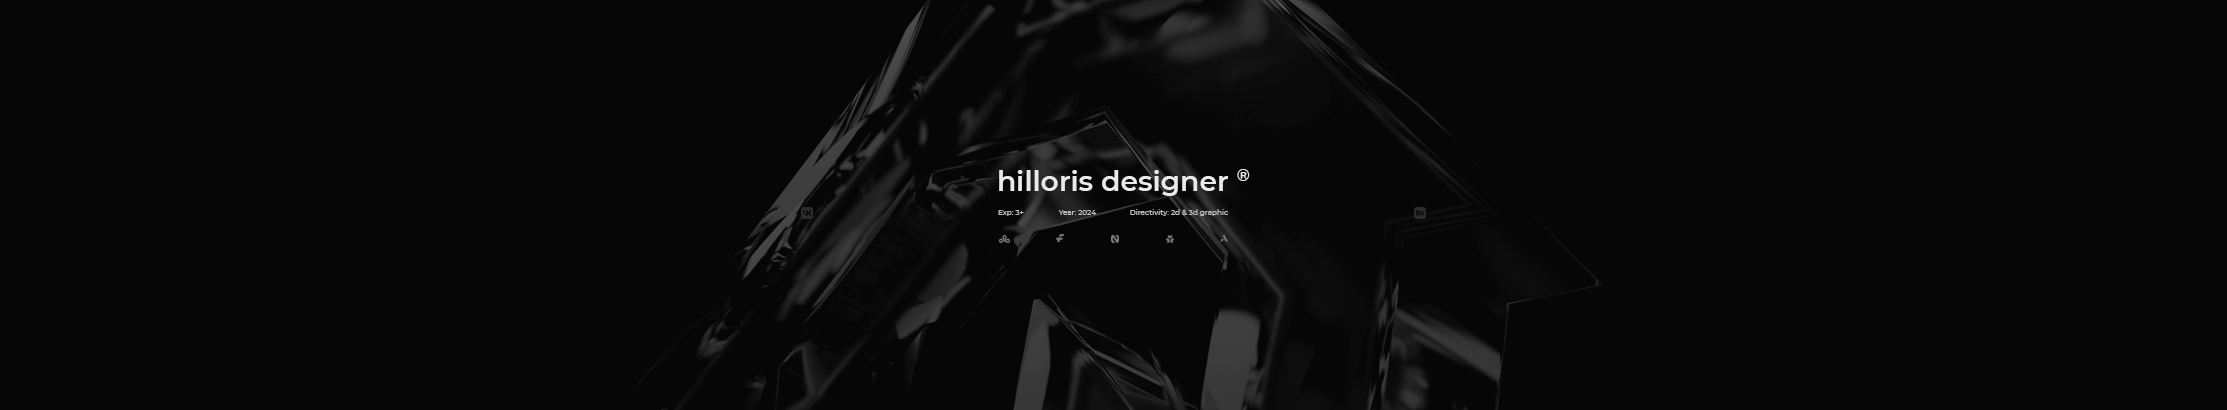 Banner de perfil de hilloris designer